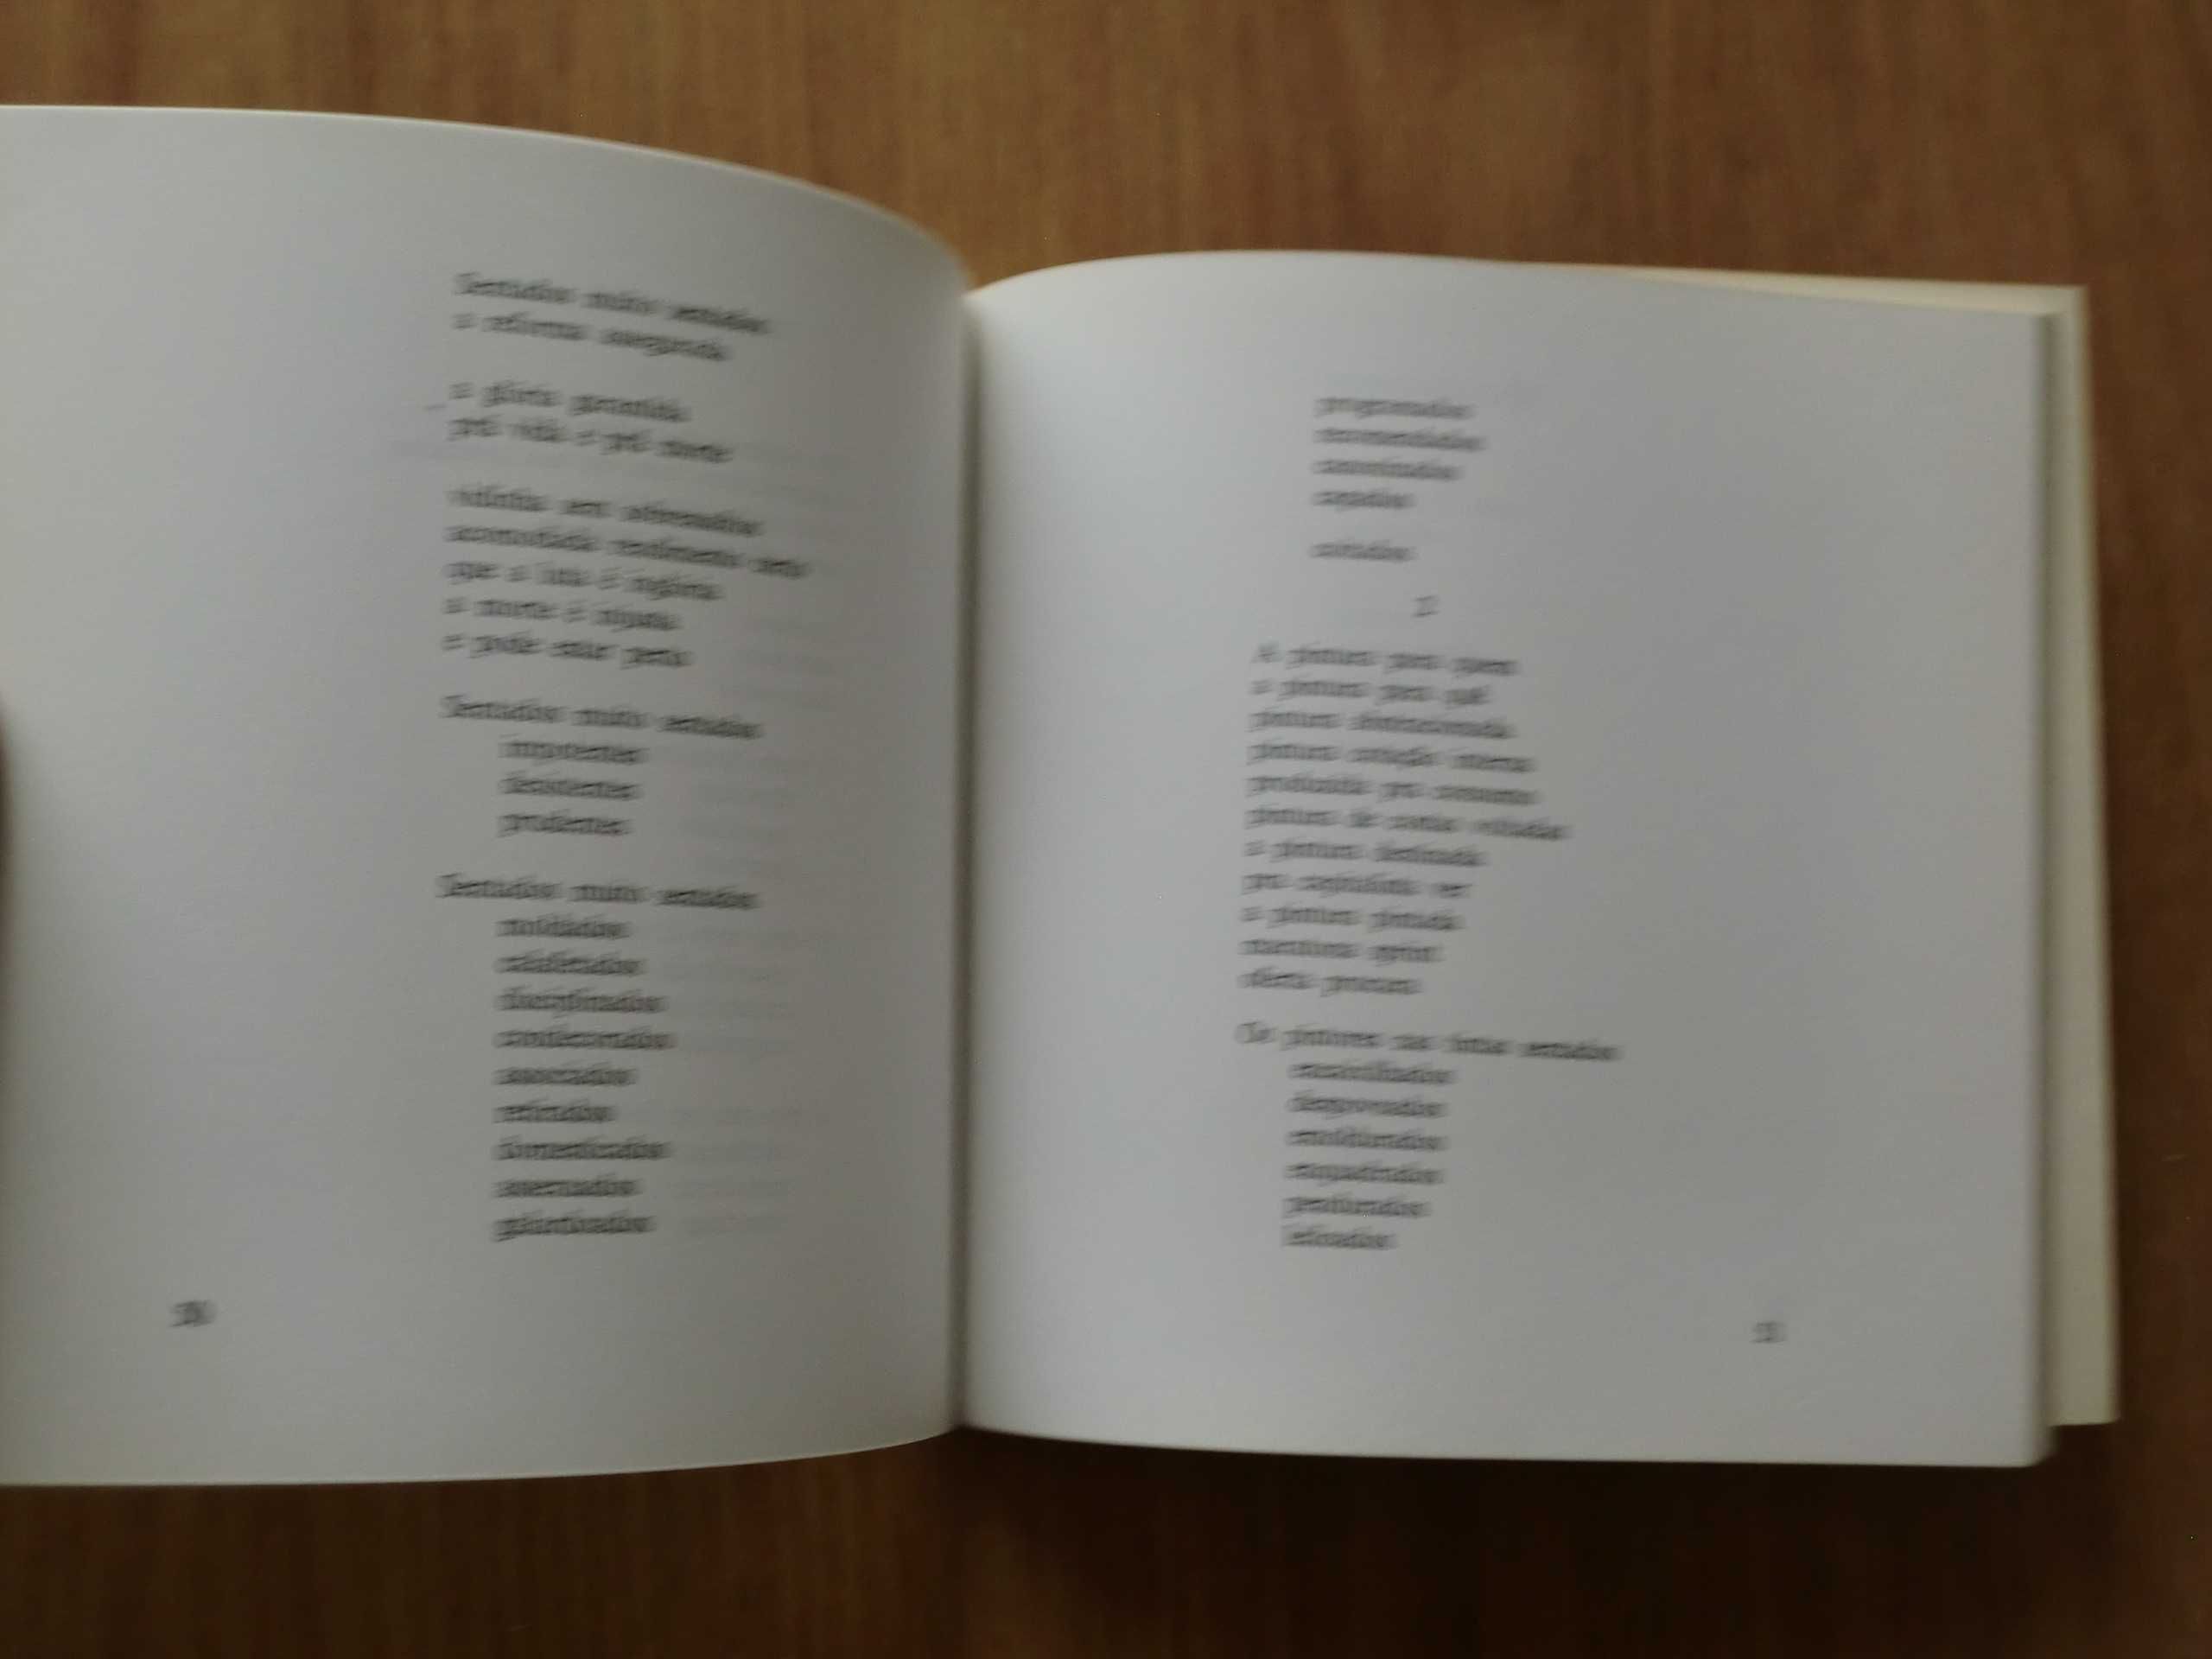 Poemas de ponta & mola de Mendes de Carvalho